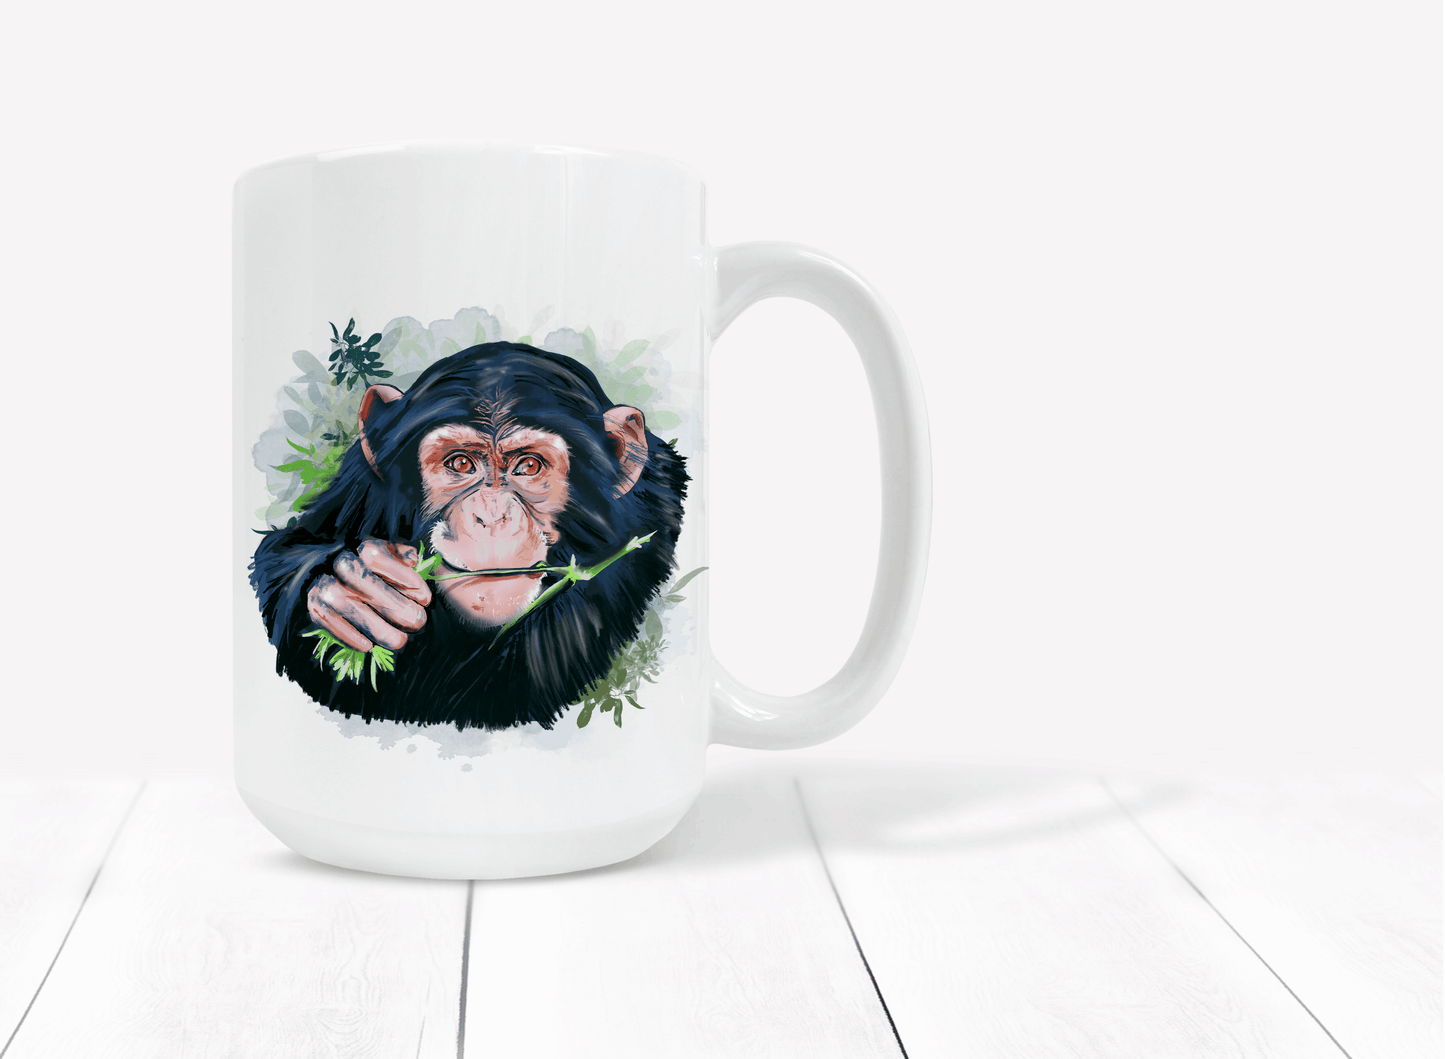  Chimpanzee Eating Leaves Coffee Mug by Free Spirit Accessories sold by Free Spirit Accessories